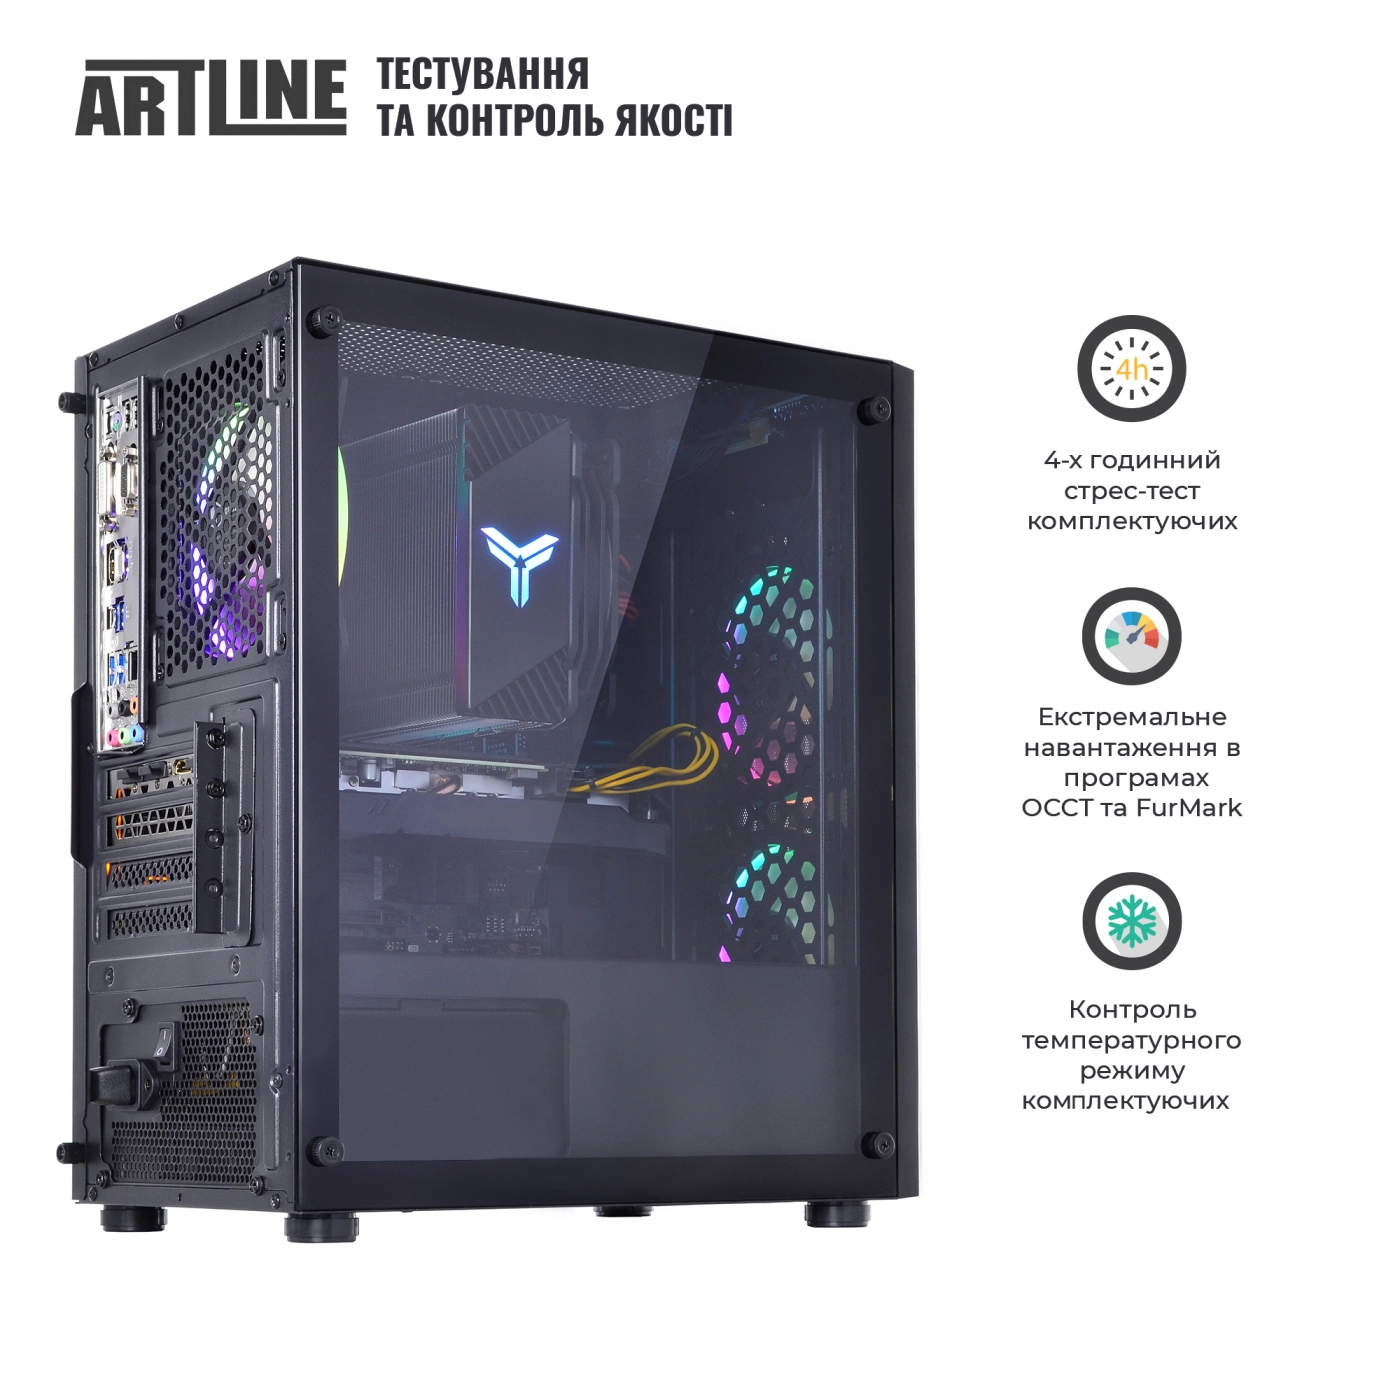 Купить Компьютер ARTLINE Gaming X51v23 - фото 8